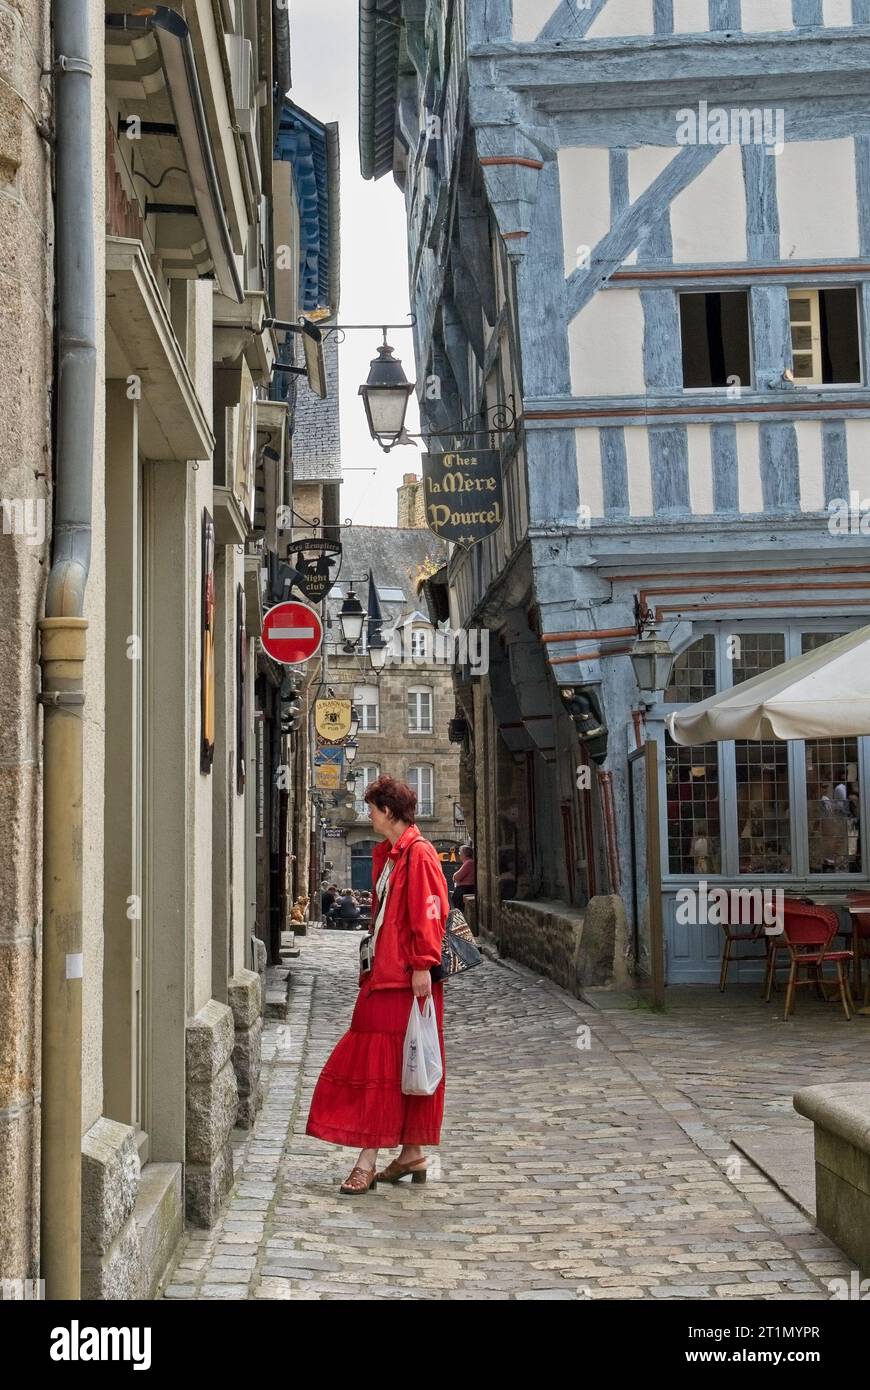 Dinan, Francia - giugno 2008: Lady in Red window shopping Place des Merciers, centro della città con strade acciottolate fiancheggiate da edifici medievali in legno Foto Stock